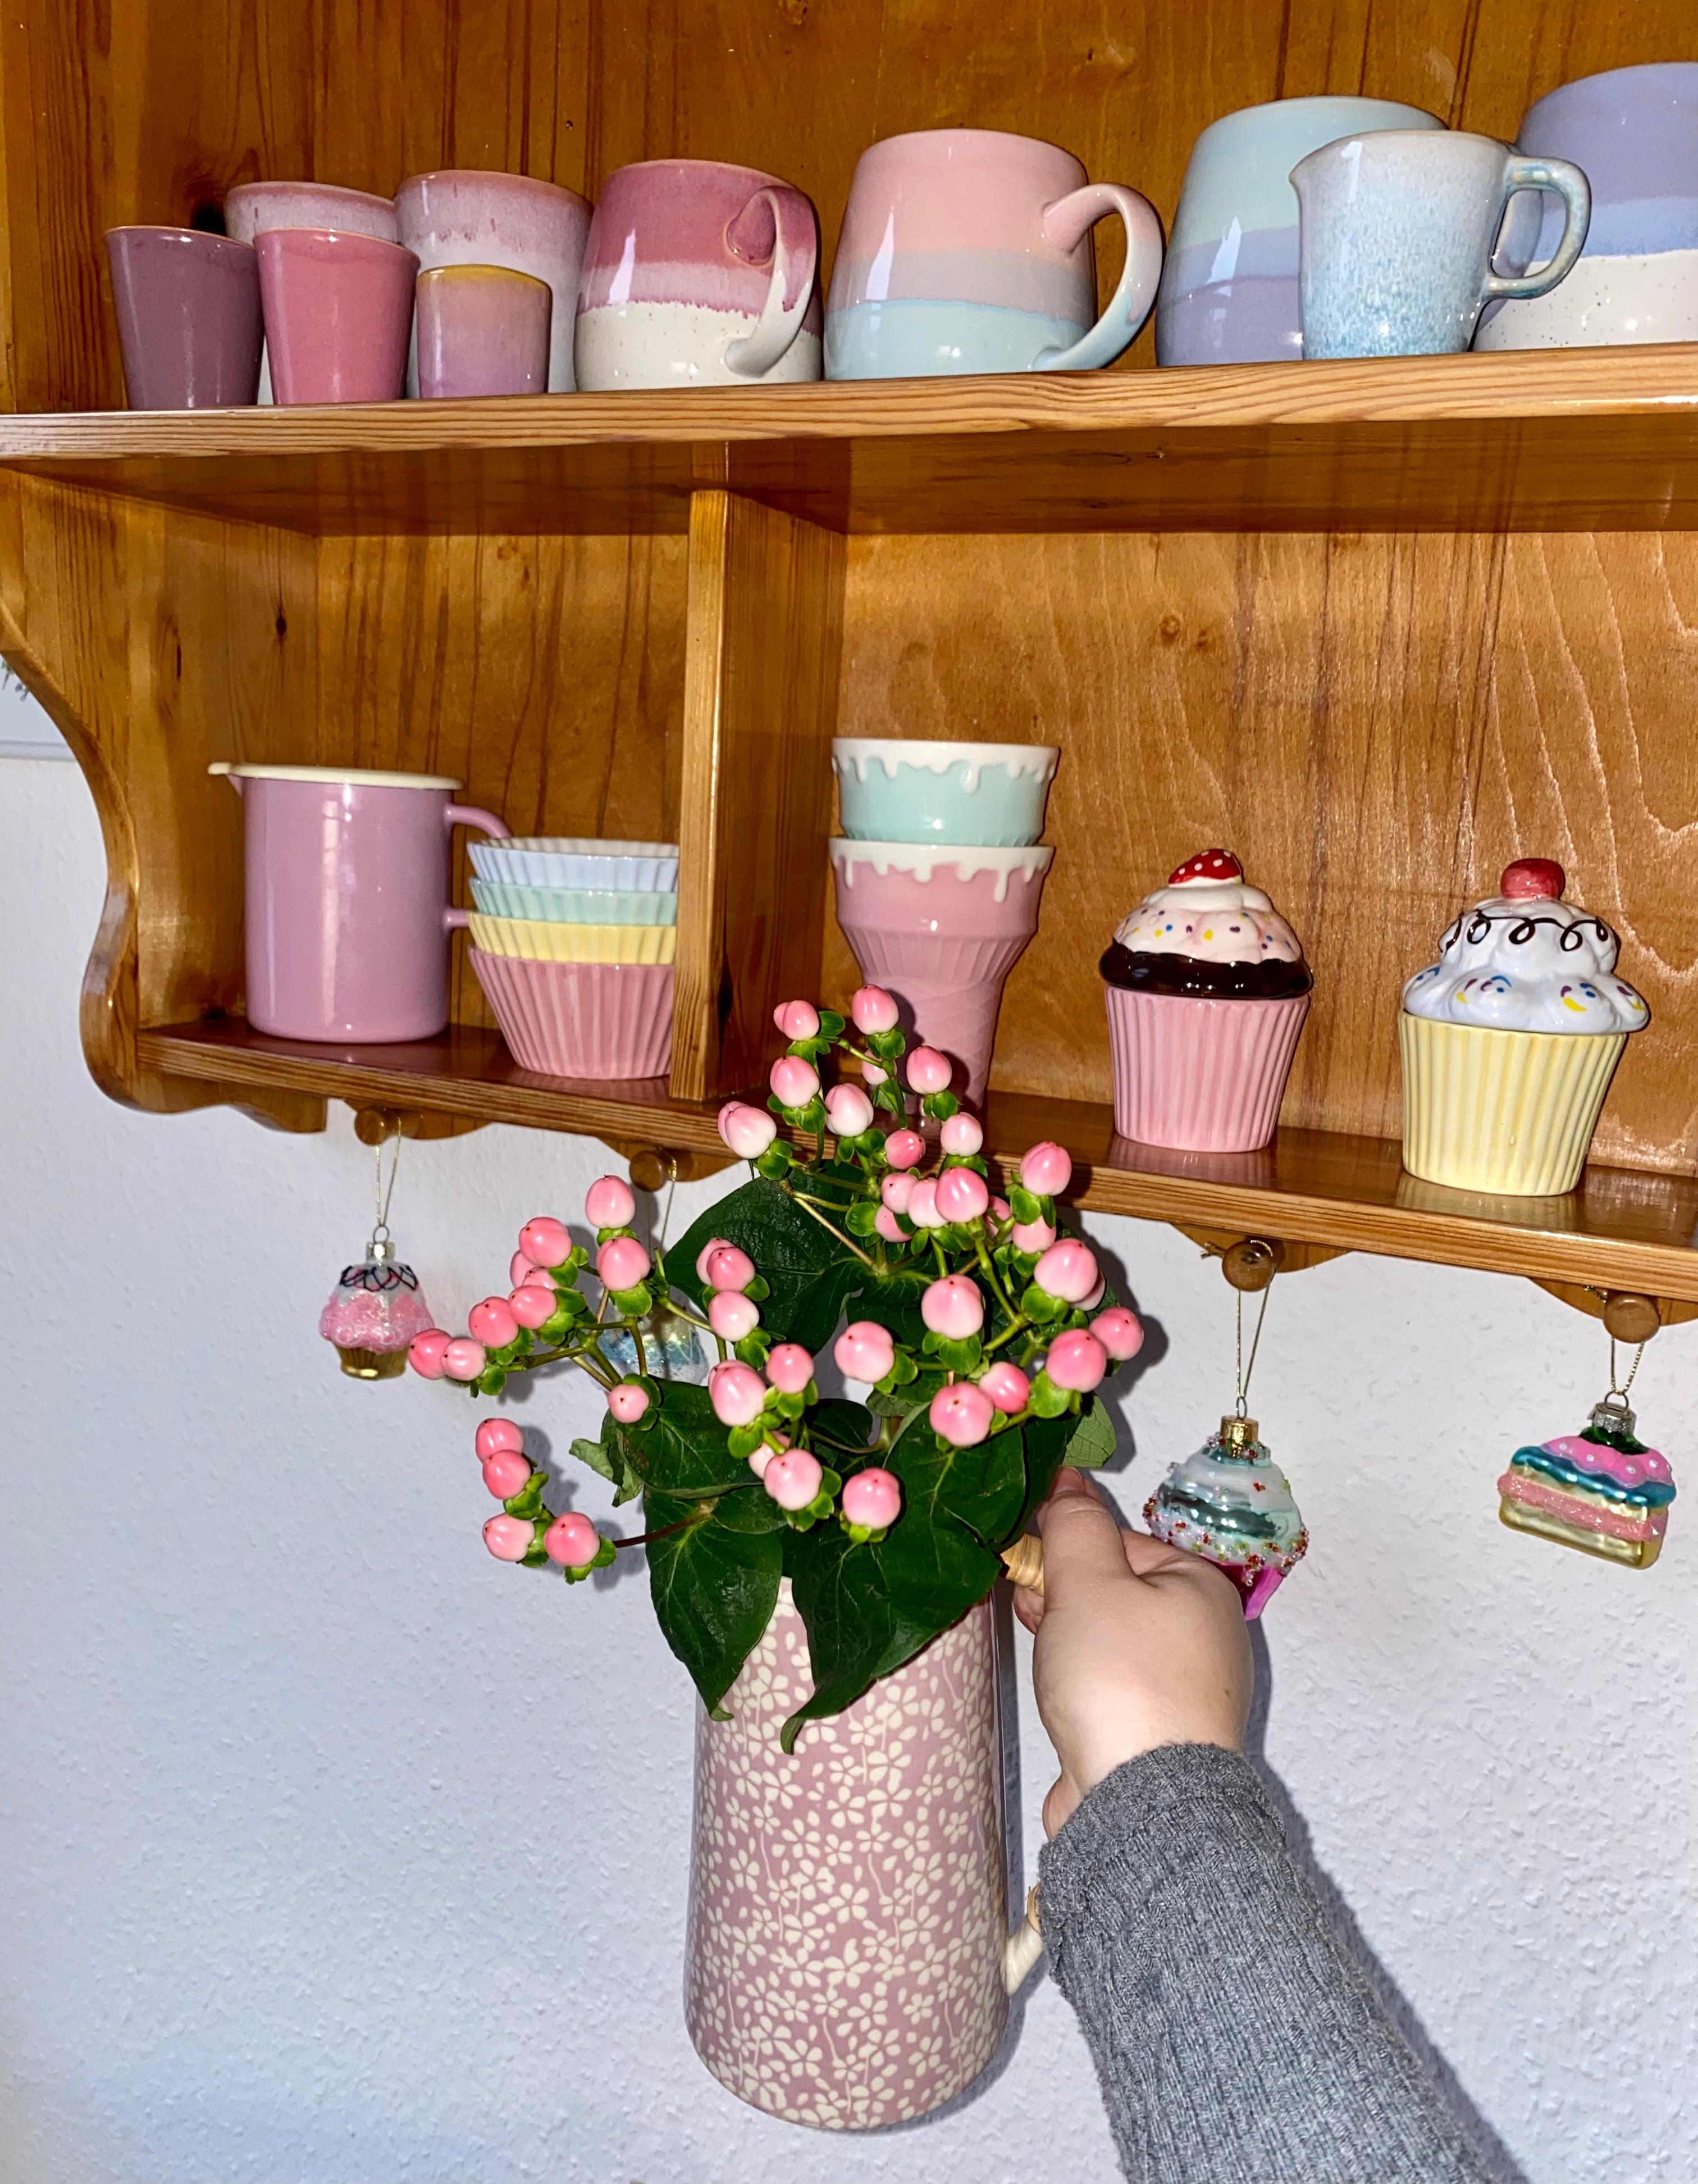 Einmal alles in #rosa bitte! 
#bunt #pastell #küchenregal #happyhome #tassen #candycolors #blumen #deko #colorful 